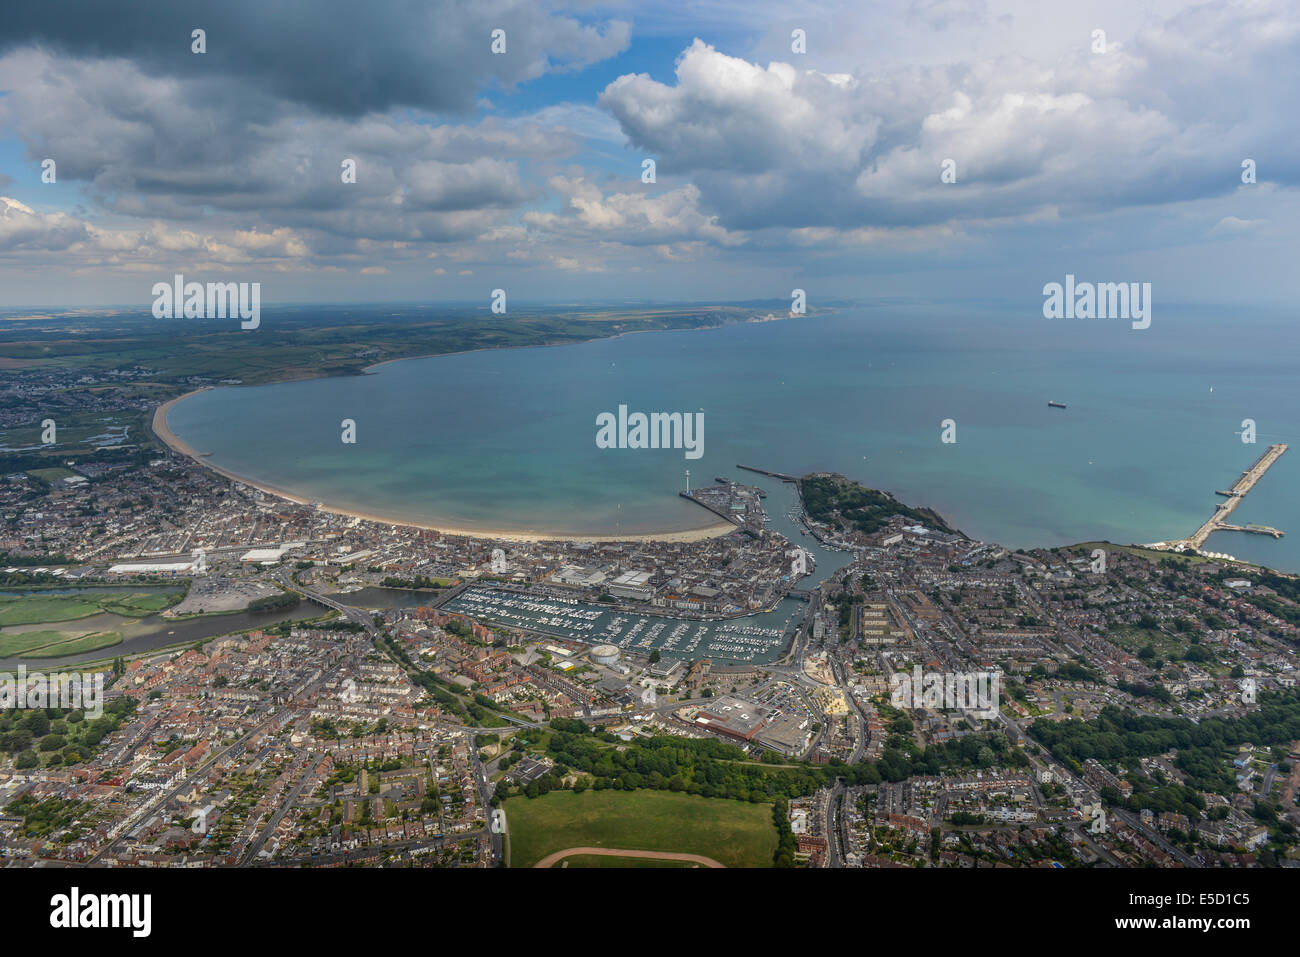 Une large vue aérienne de la ville de Weymouth Dorset avec la proximité du littoral et de la campagne un amd visibles ciel dramatique. Banque D'Images